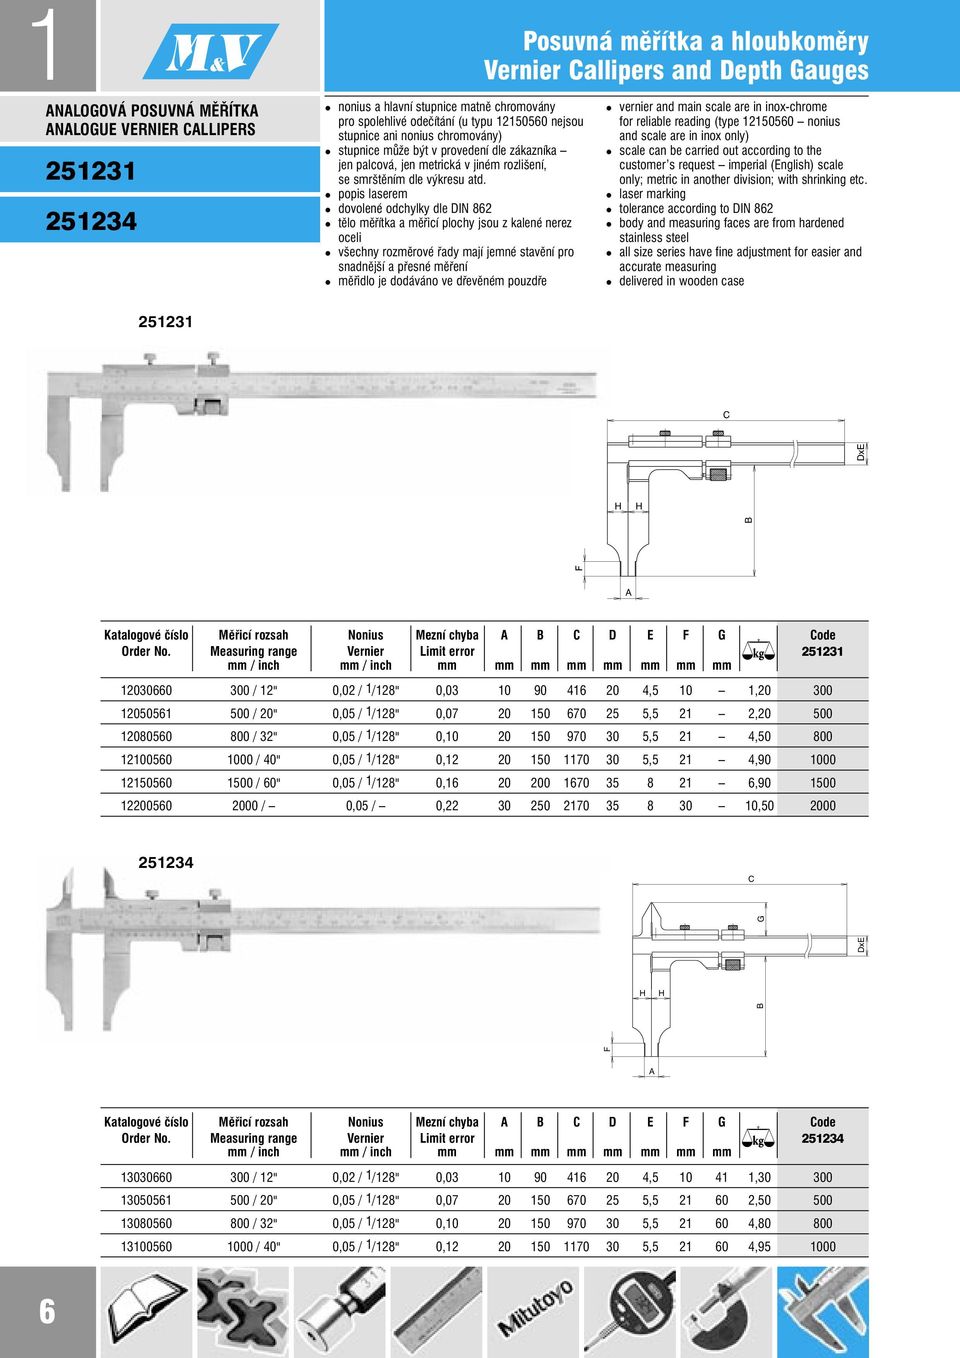 popis laserem dovolené odchylky dle DIN 862 tělo měřítka a měřicí plochy jsou z kalené nerez oceli všechny rozměrové řady mají jemné stavění pro snadnější a přesné měření měřidlo je dodáváno ve